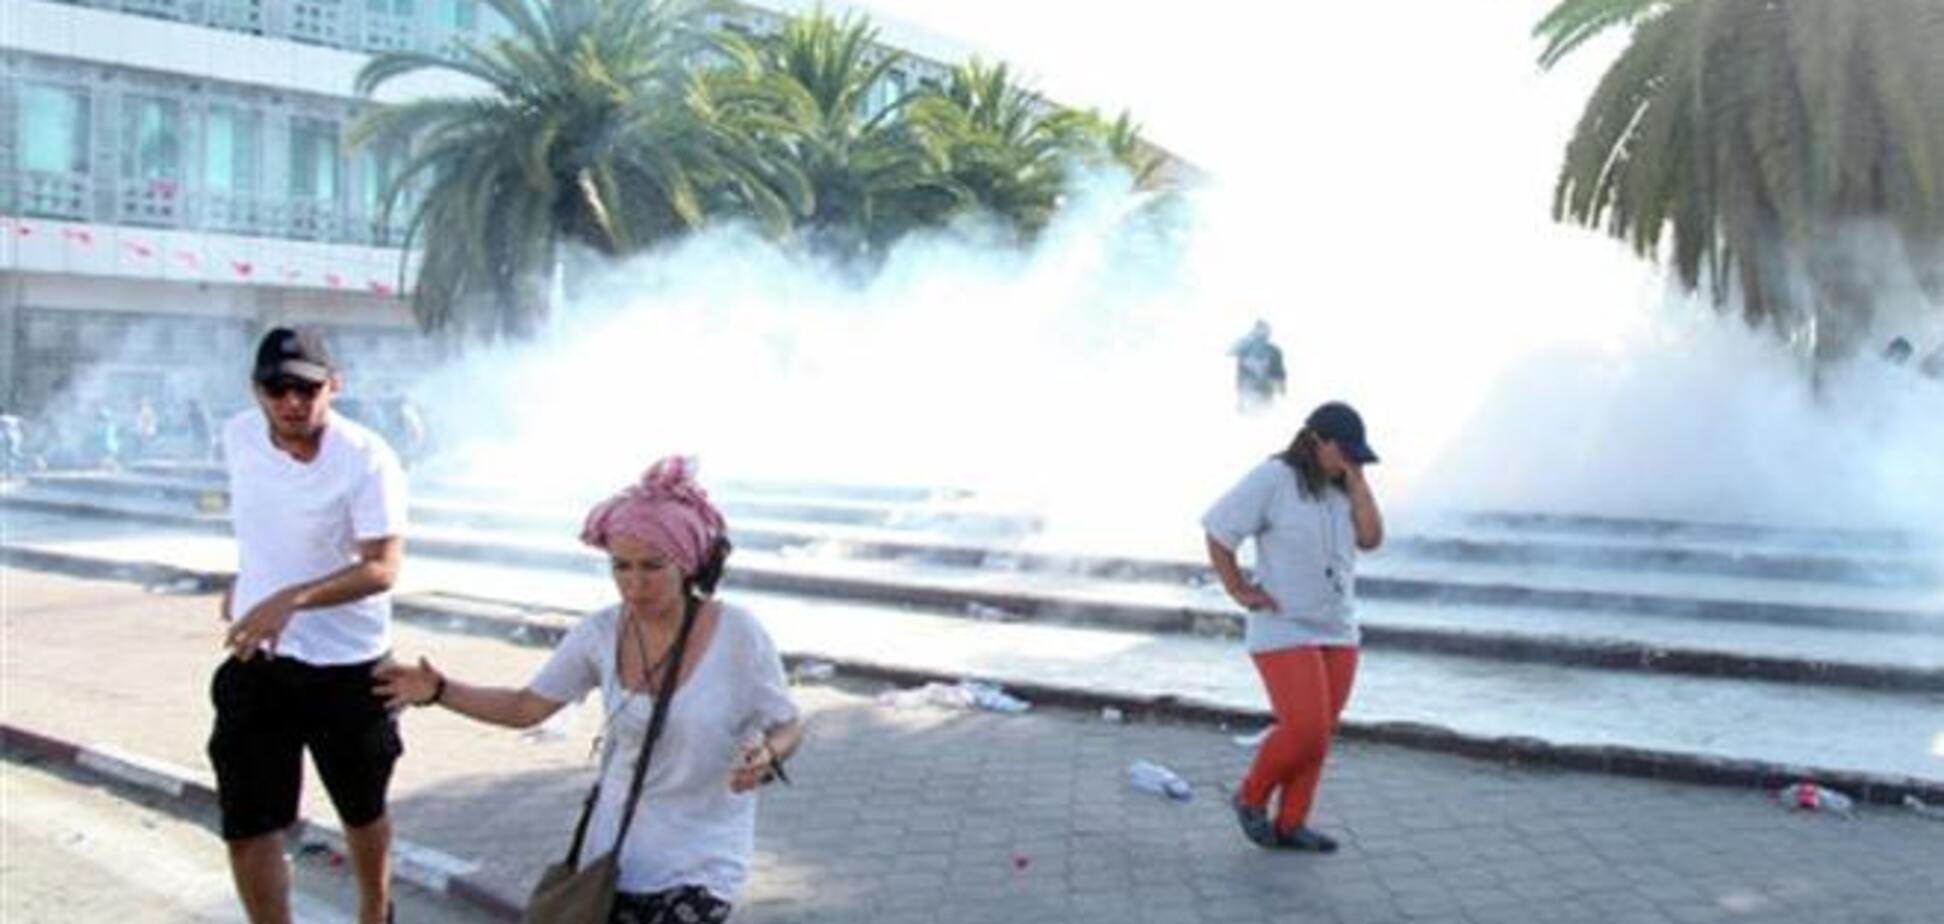 Армия Туниса оцепила центр столицы колючей проволокой